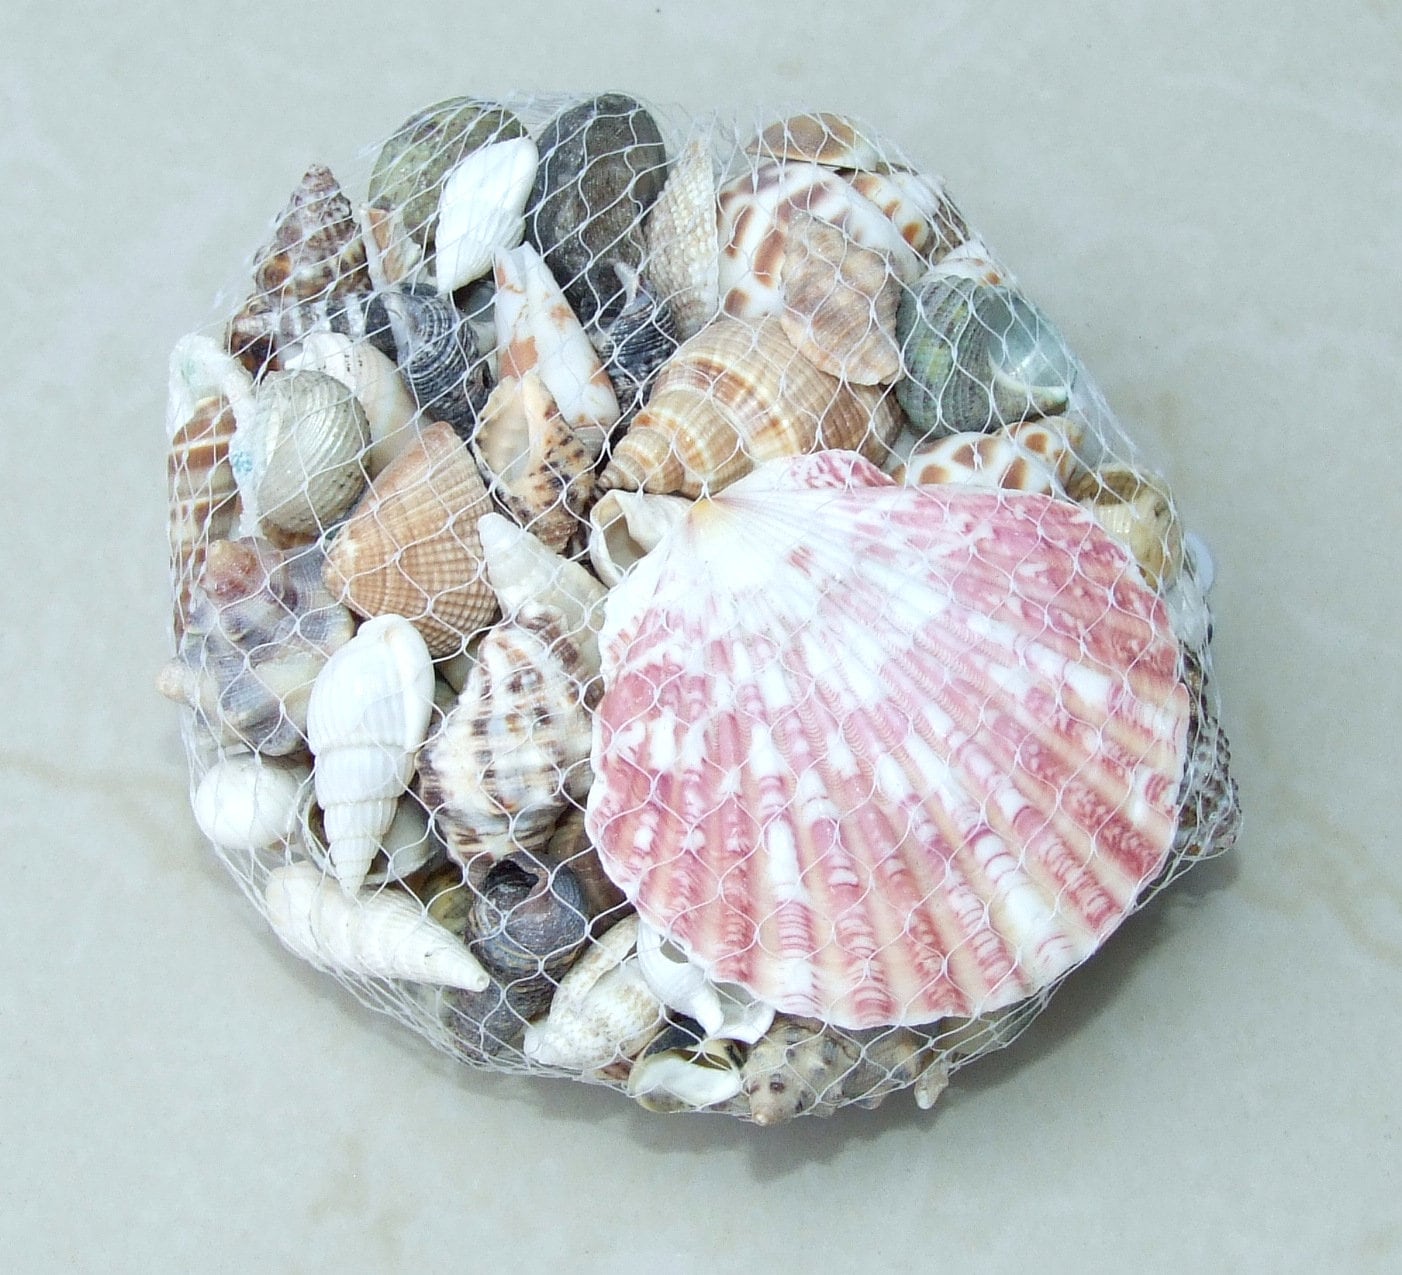 Net Full of Shells, Mixed Natural Seashells, Spiral Shells, Clam Shells, Scallop Shells, Undrilled Craft Shells, 80-100 Shells, 15-40+mm 015